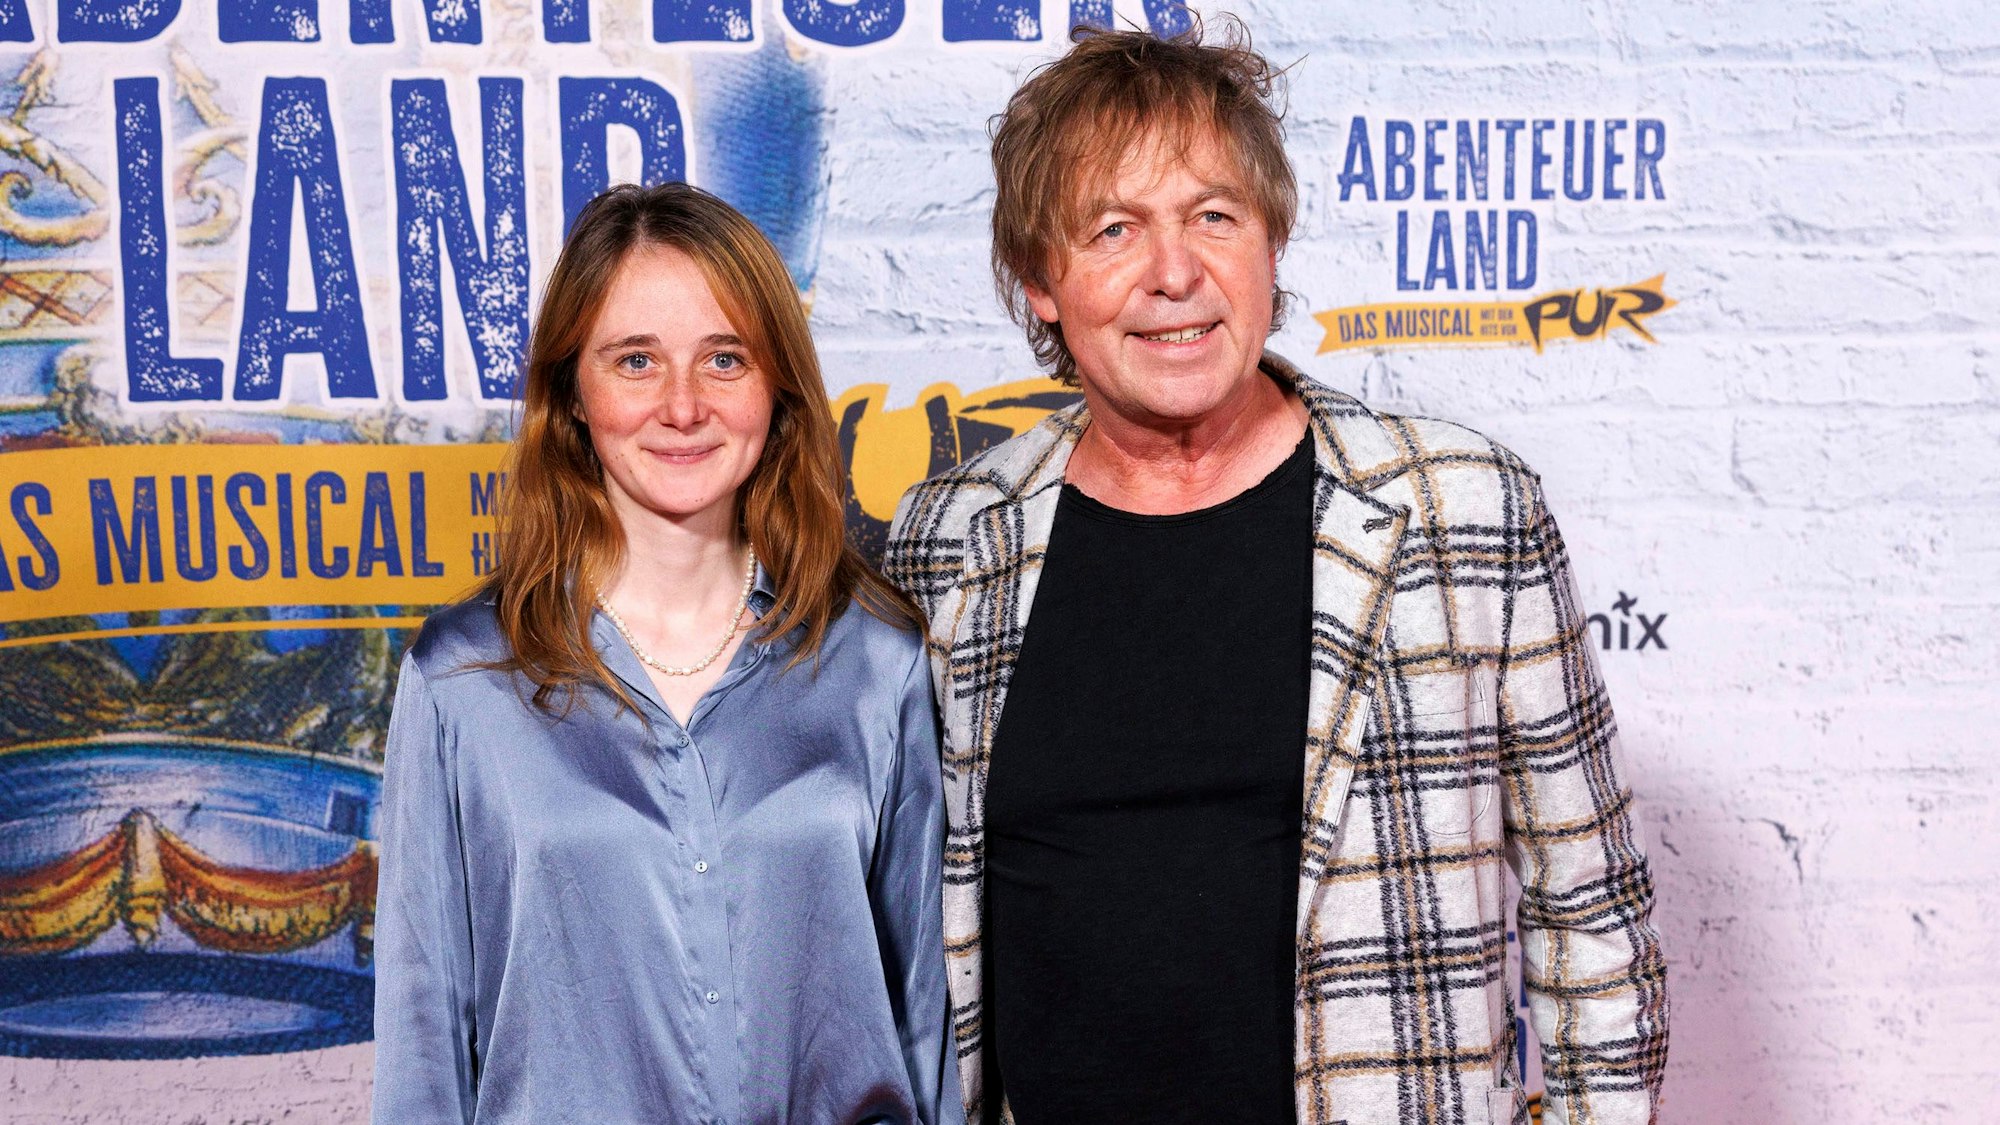 Sänger Peter Freudenthaler von Fools Garden mit Tochter Leonie Freudenthaler bei der Premiere des PUR-Musicals Abenteuerland im Capitol Theater.